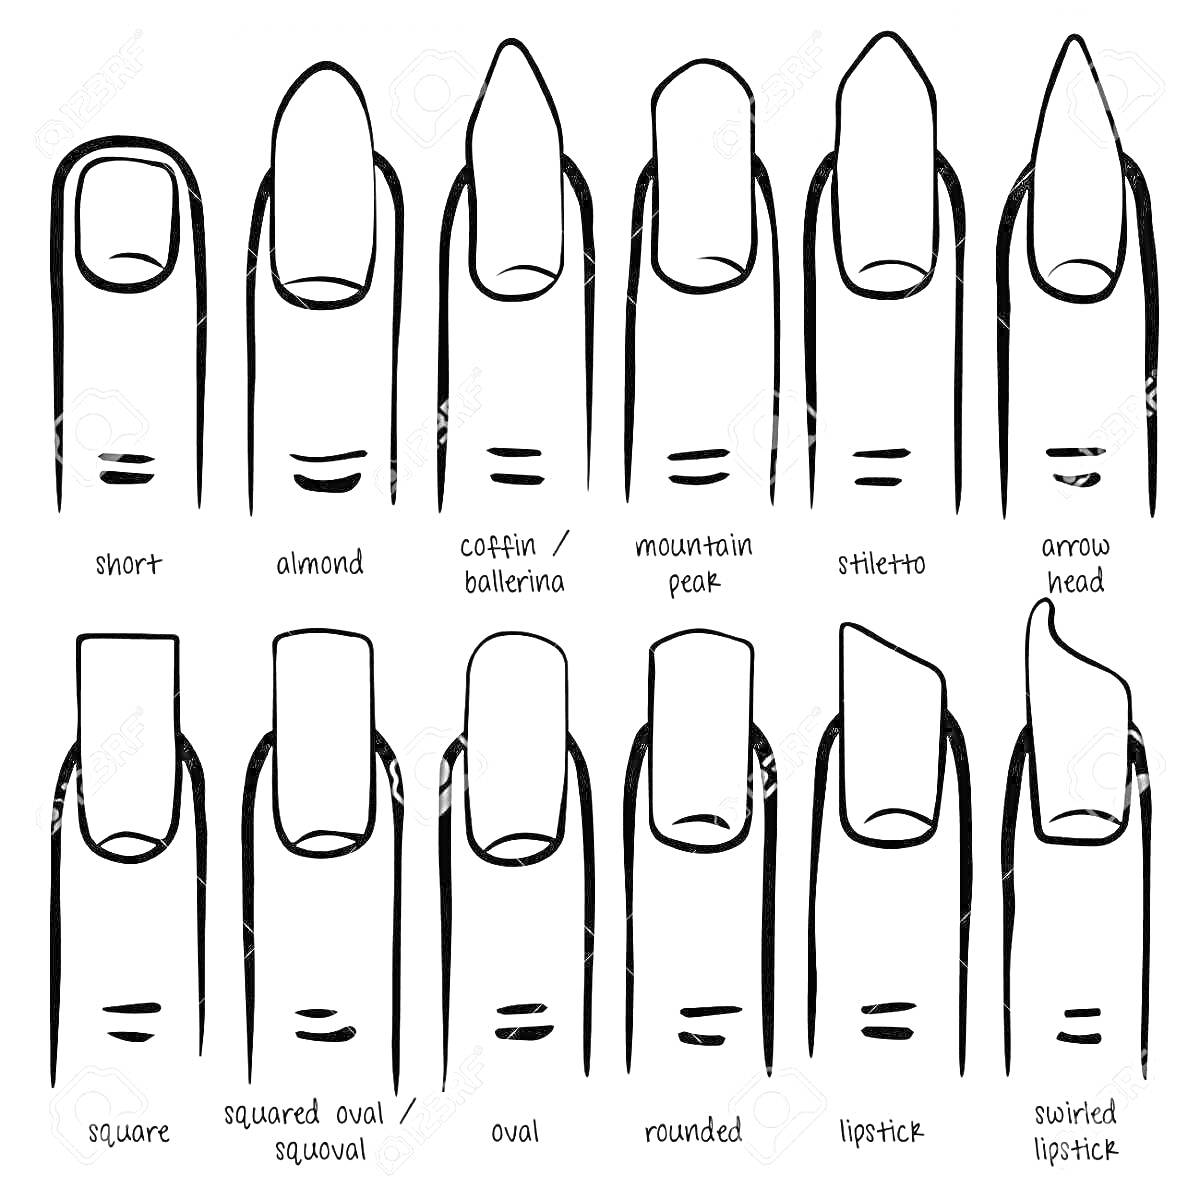 Раскраска Схема разных форм ногтей: короткие, миндалевидные, гроб/балерина, гора, стилет, стрелка, квадратные, квадрат овал/квадратный овал, овальные, круглые, помада, помада с завитком